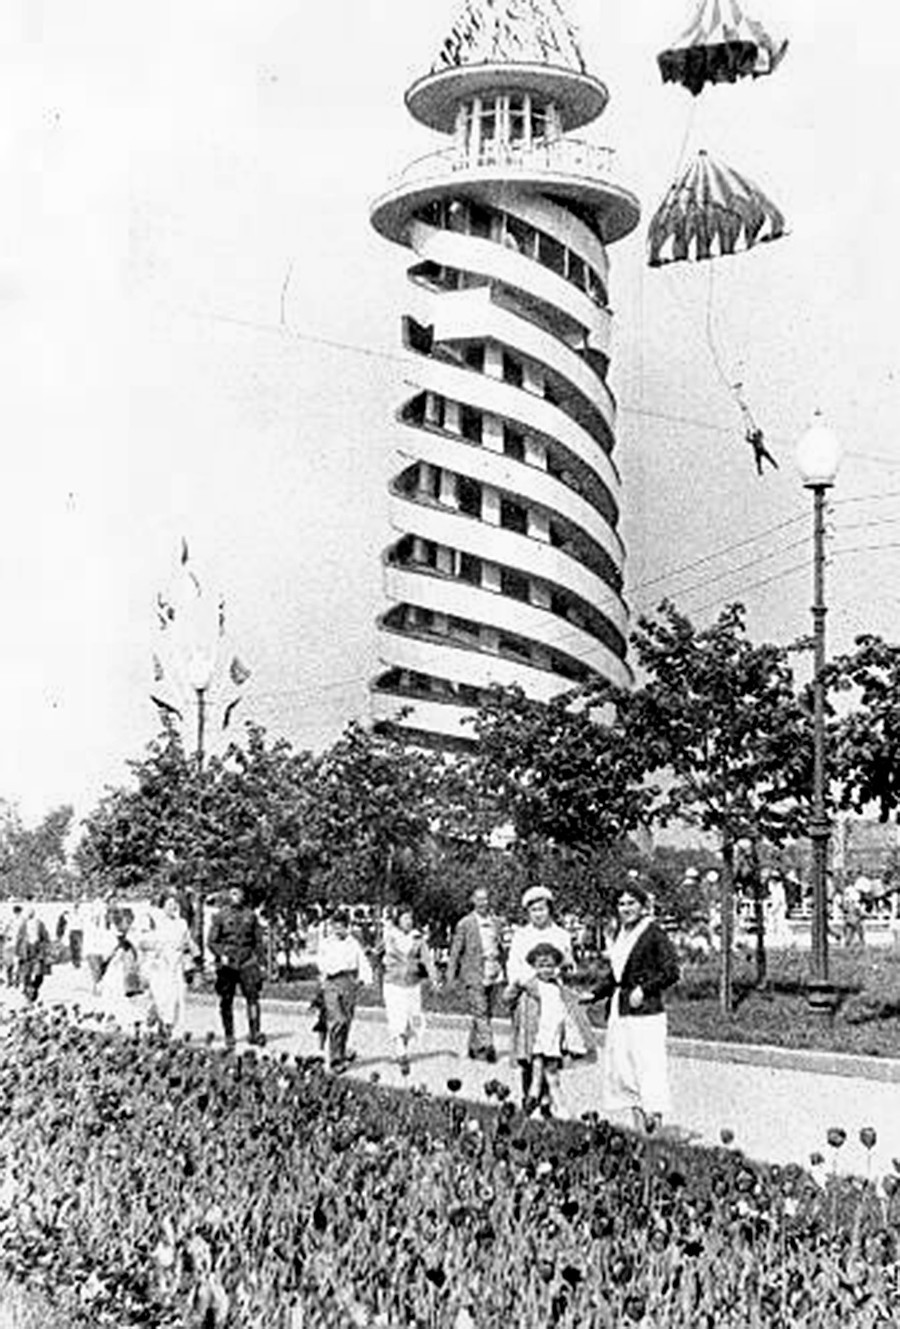 Padalski stolp v parku Gorki, 30-ta leta prejšnjega stoletja.
